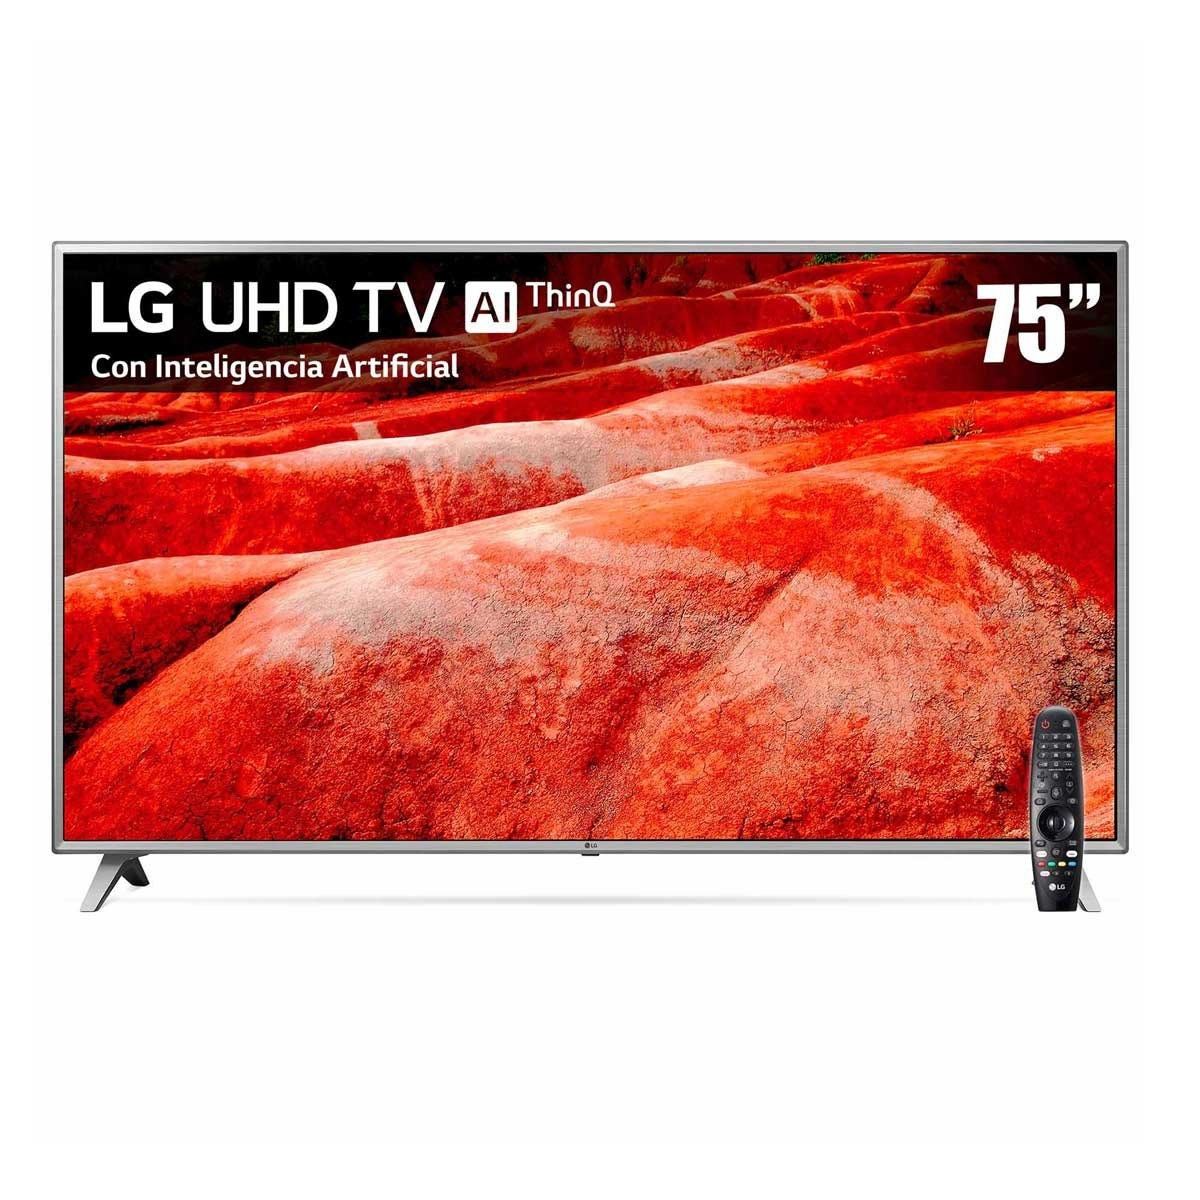 Pantalla LG UHD TV AI ThinQ 4K 75&quot;